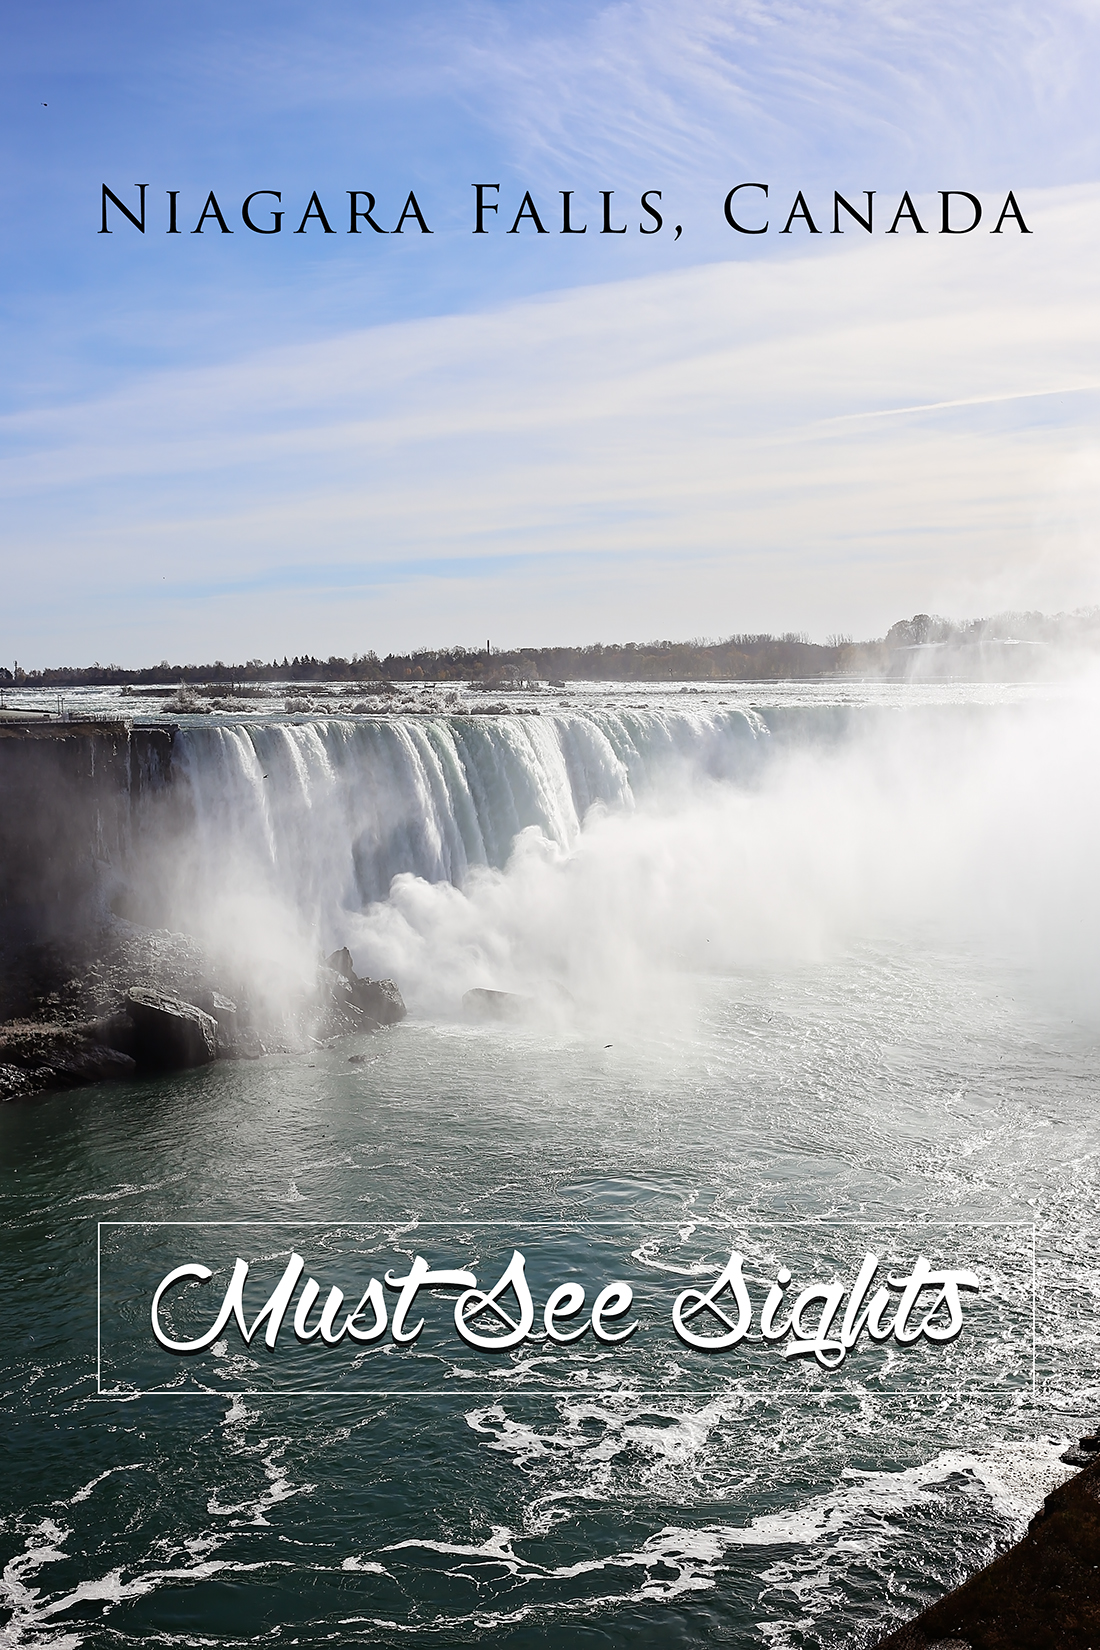 Niagara Falls Canada - Must See Sights to Explore